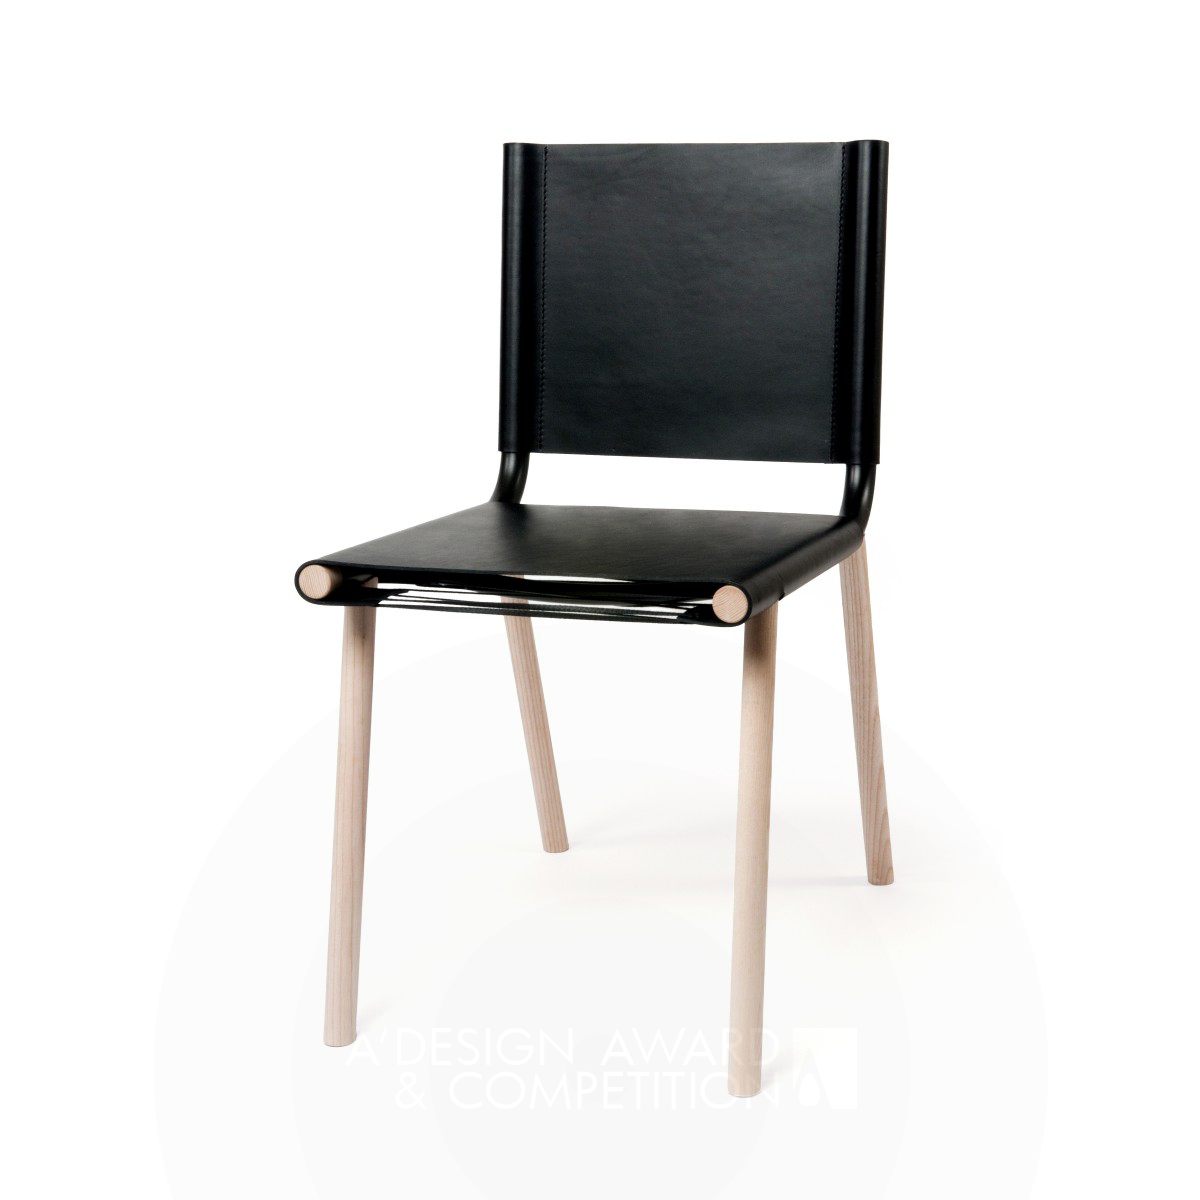 Japan: Ein minimalistischer Stuhl, der traditionelle japanische Architektur verkörpert